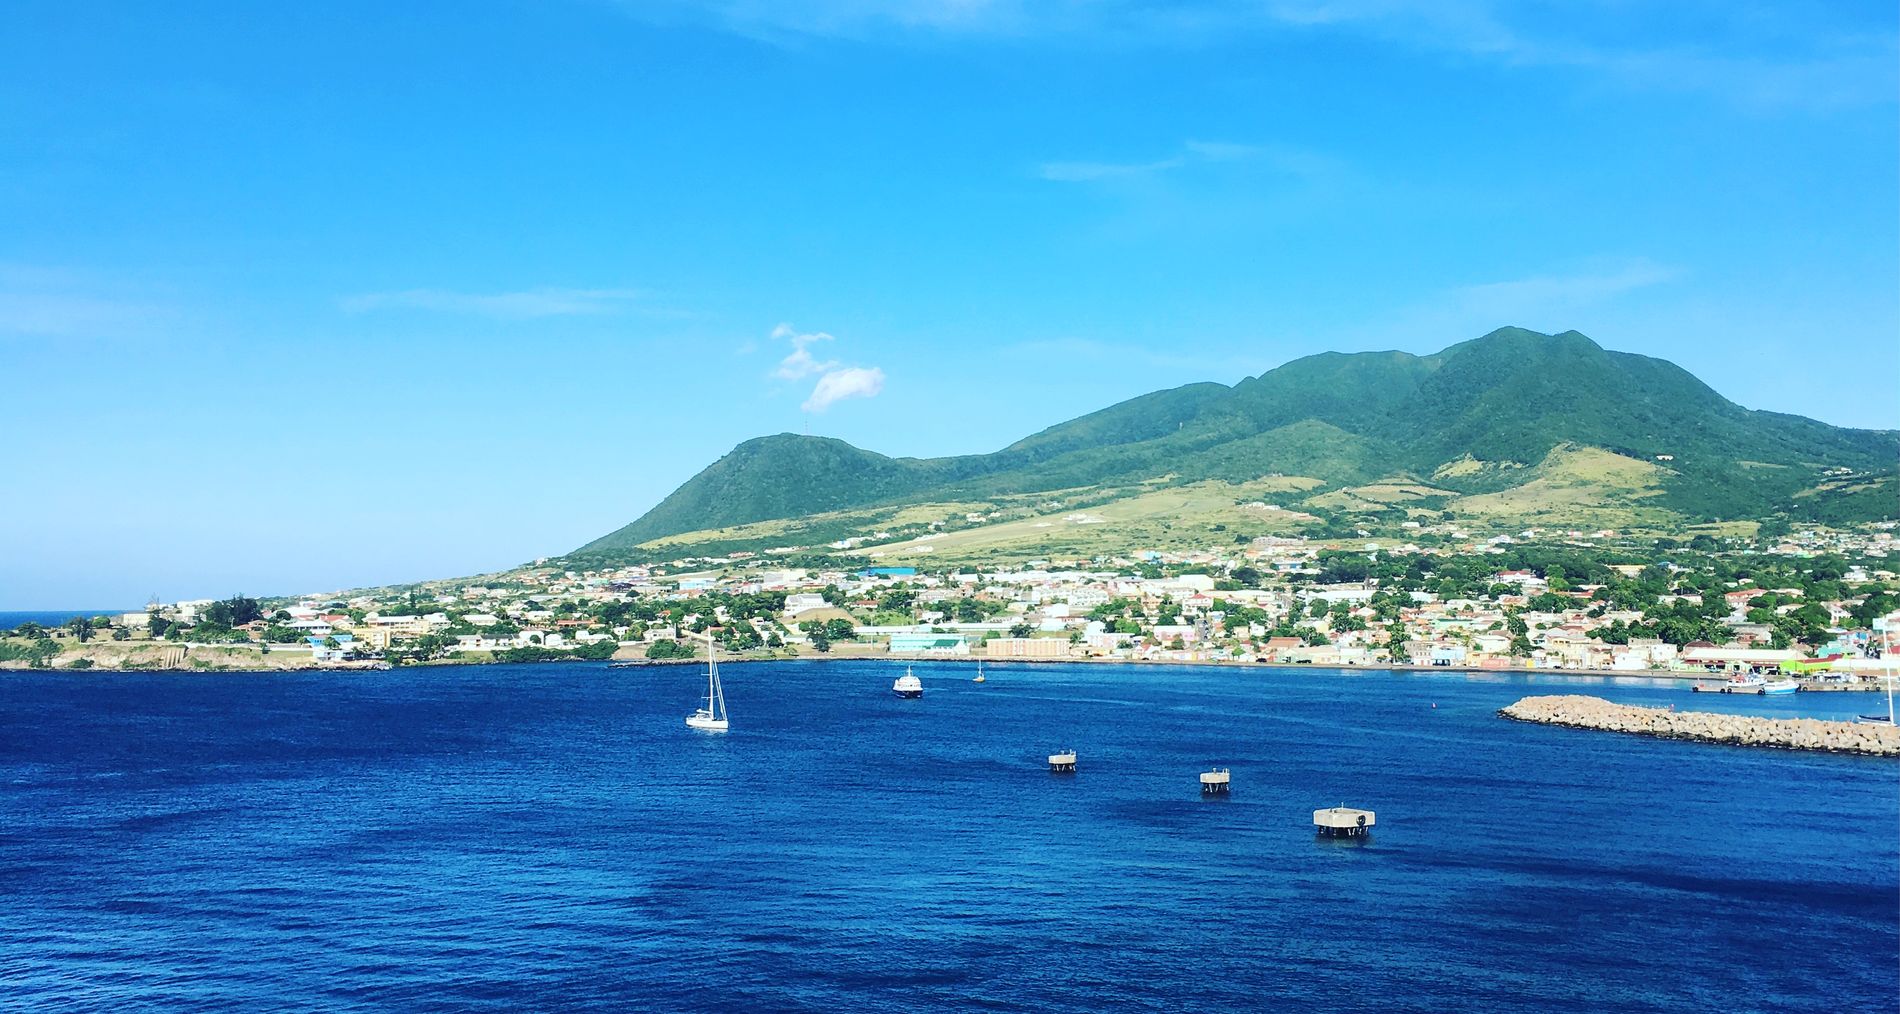 SE VERDEN I VINTER: Med Ving kan du reise til blant annet Mauritius, Thailand og Kanariøyene denne vinteren. Eller hva med et cruise i Karibia? På bildet ser du Saint Kitts.